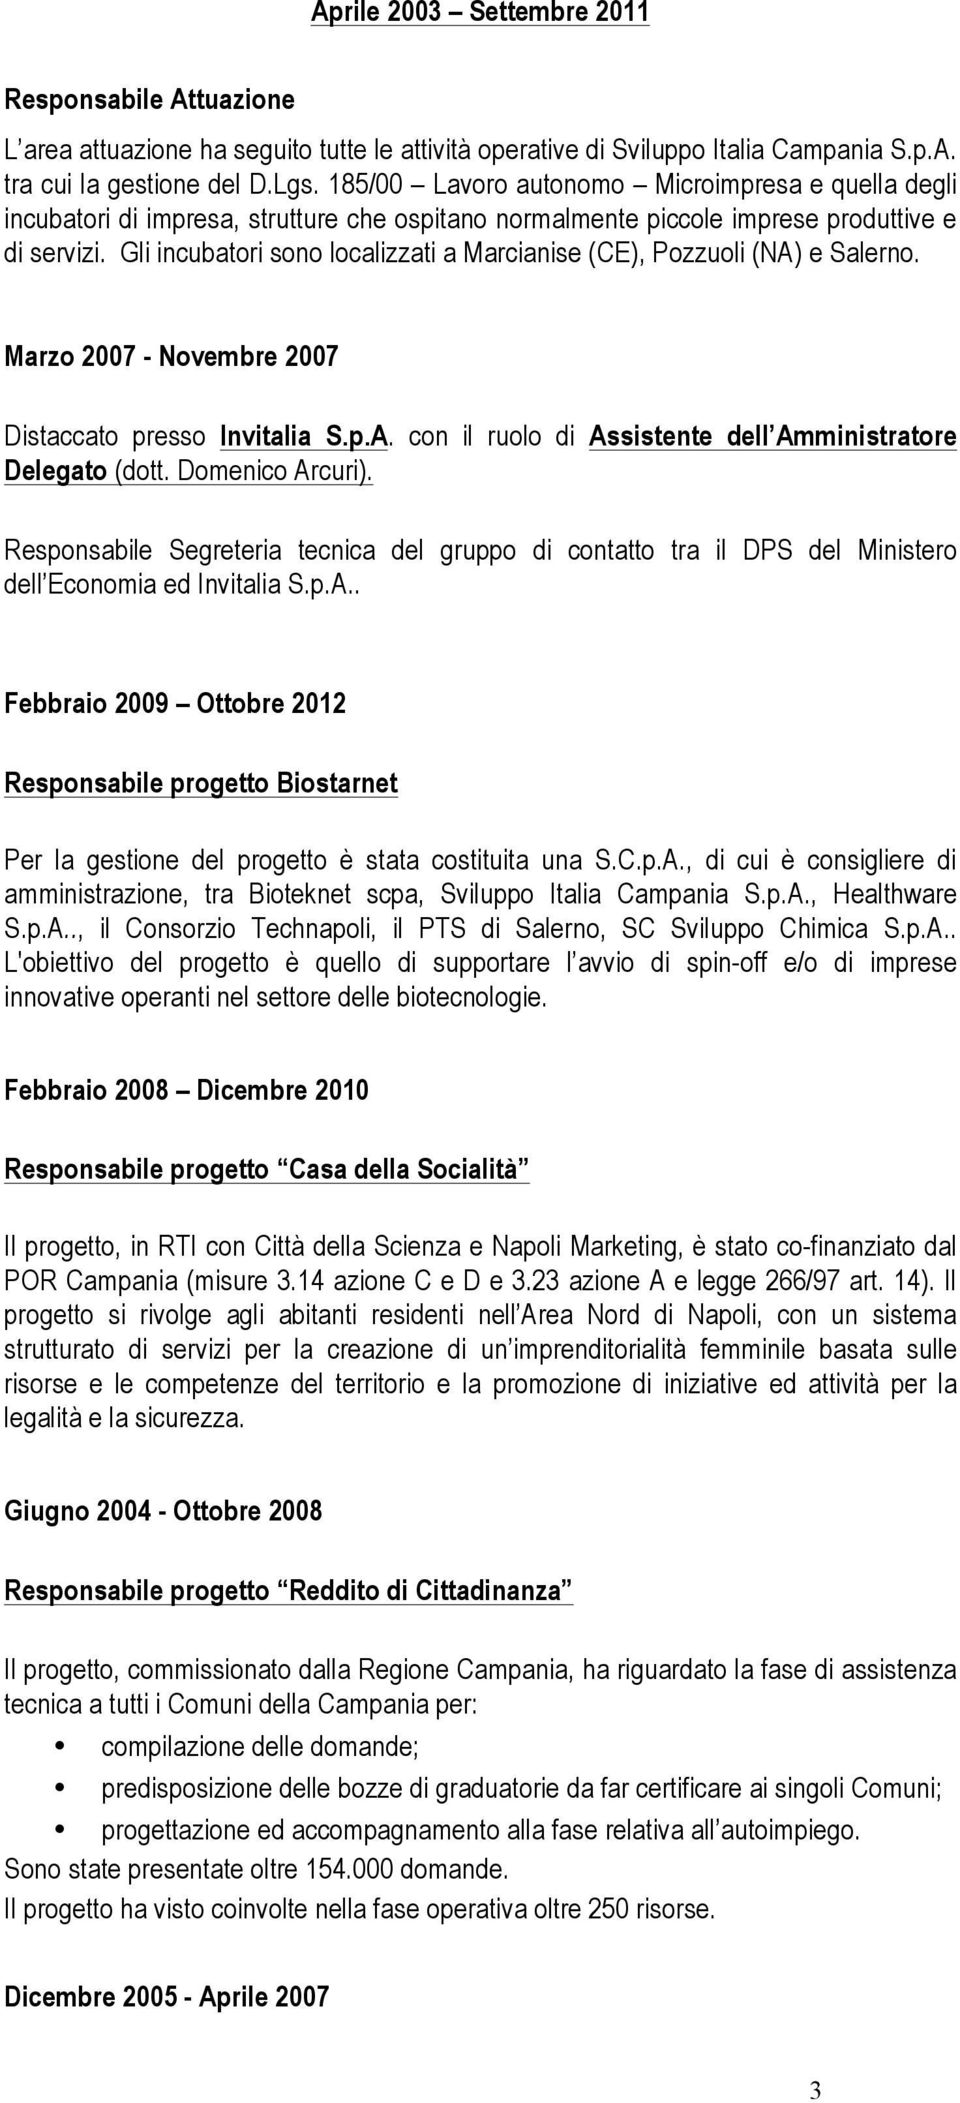 Gli incubatori sono localizzati a Marcianise (CE), Pozzuoli (NA) e Salerno. Marzo 2007 - Novembre 2007 Distaccato presso Invitalia S.p.A. con il ruolo di Assistente dell Amministratore Delegato (dott.